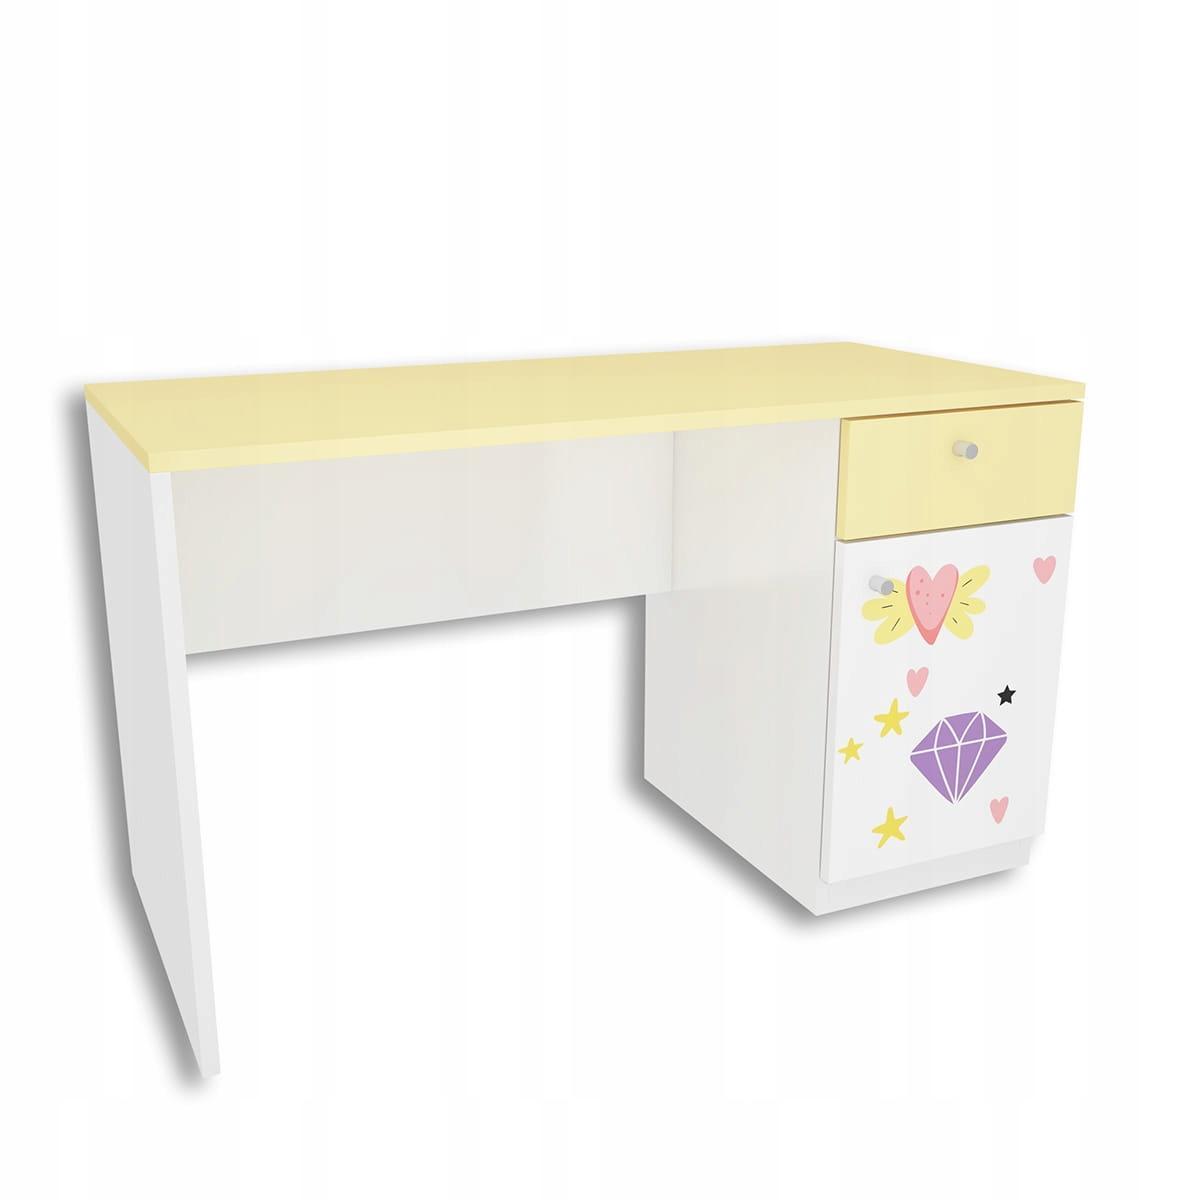 Zestaw 4 szt mebli DIAMOND biało żółte szafa, biurko, 2 szafki wiszące z jednorożcem dla dziecka  nr. 3